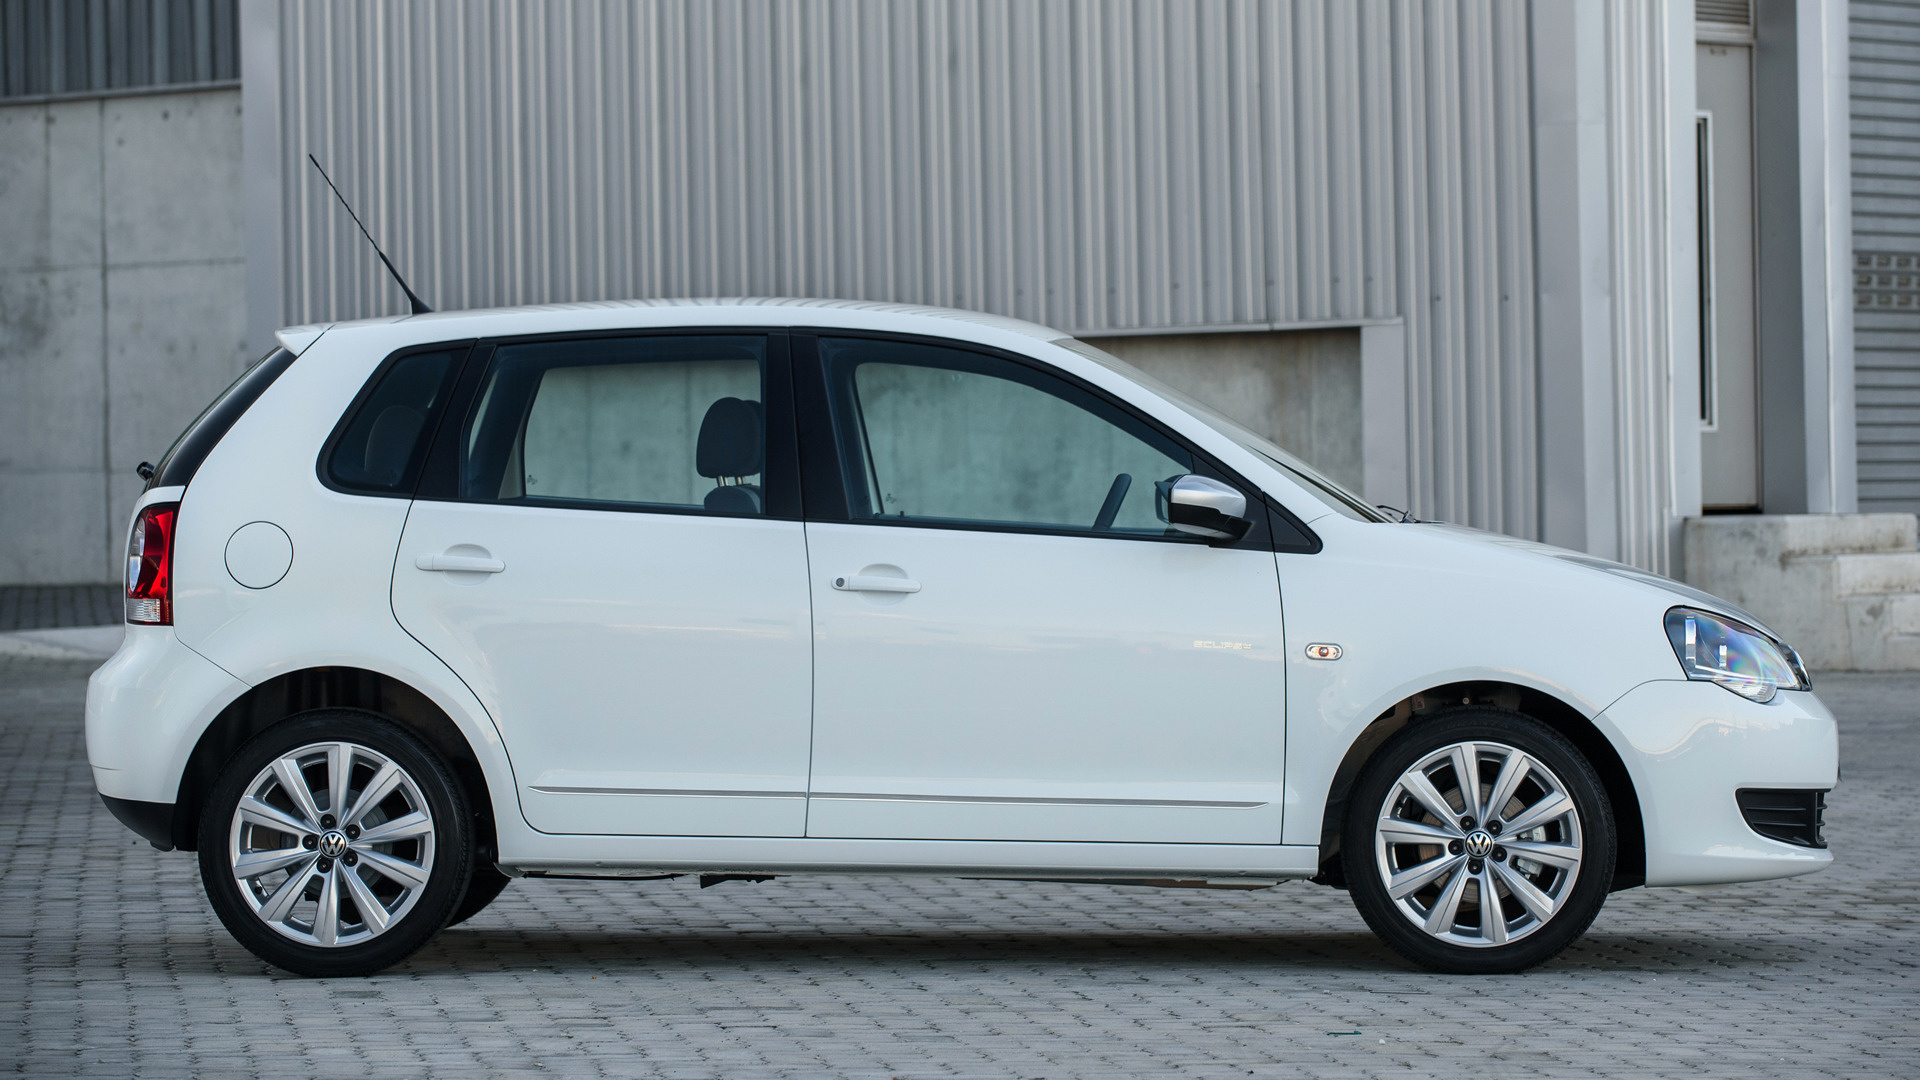 Volkswagen Polo Vivo Eclipse 5door 2015 ZA Wallpapers and HD Images  Car Pixel